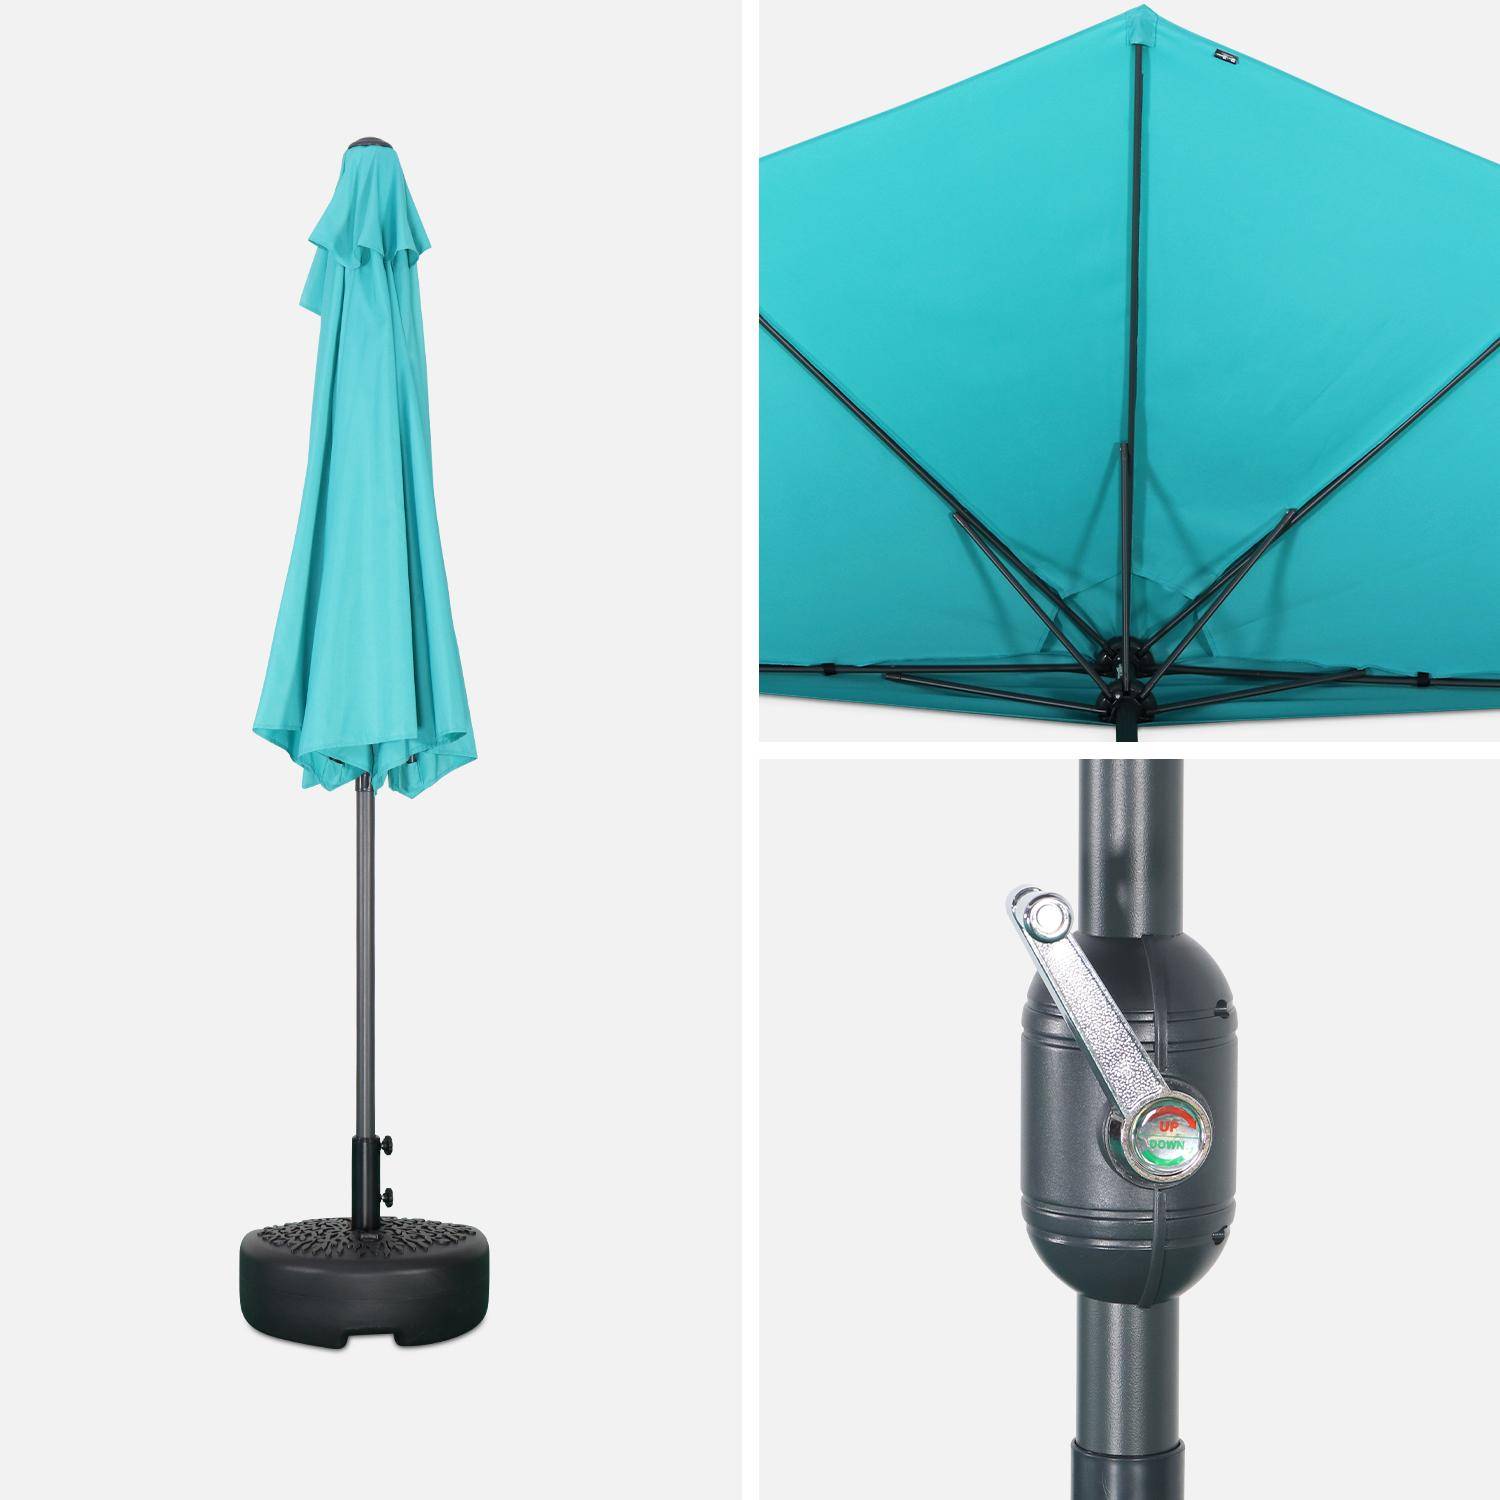  Parasol para balcón Ø250cm  – CALVI – Pequeño parasol recto, mástil en aluminio con manivela, tela color turquesa Photo4